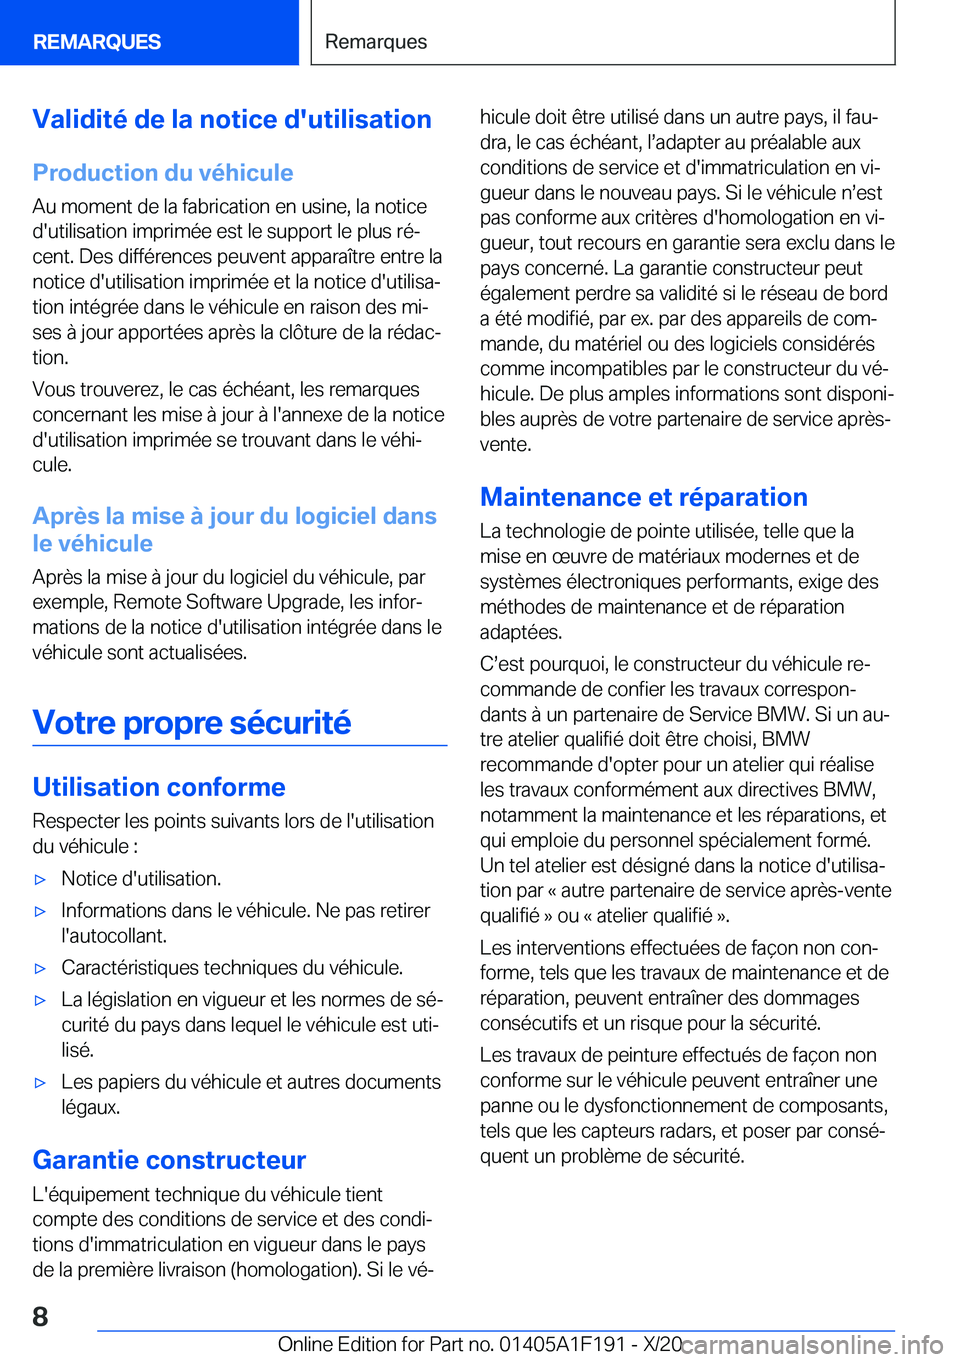 BMW M5 2021  Notices Demploi (in French) �V�a�l�i�d�i�t�é��d�e��l�a��n�o�t�i�c�e��d�'�u�t�i�l�i�s�a�t�i�o�n
�P�r�o�d�u�c�t�i�o�n��d�u��v�é�h�i�c�u�l�e
�A�u��m�o�m�e�n�t��d�e��l�a��f�a�b�r�i�c�a�t�i�o�n��e�n��u�s�i�n�e�,��l